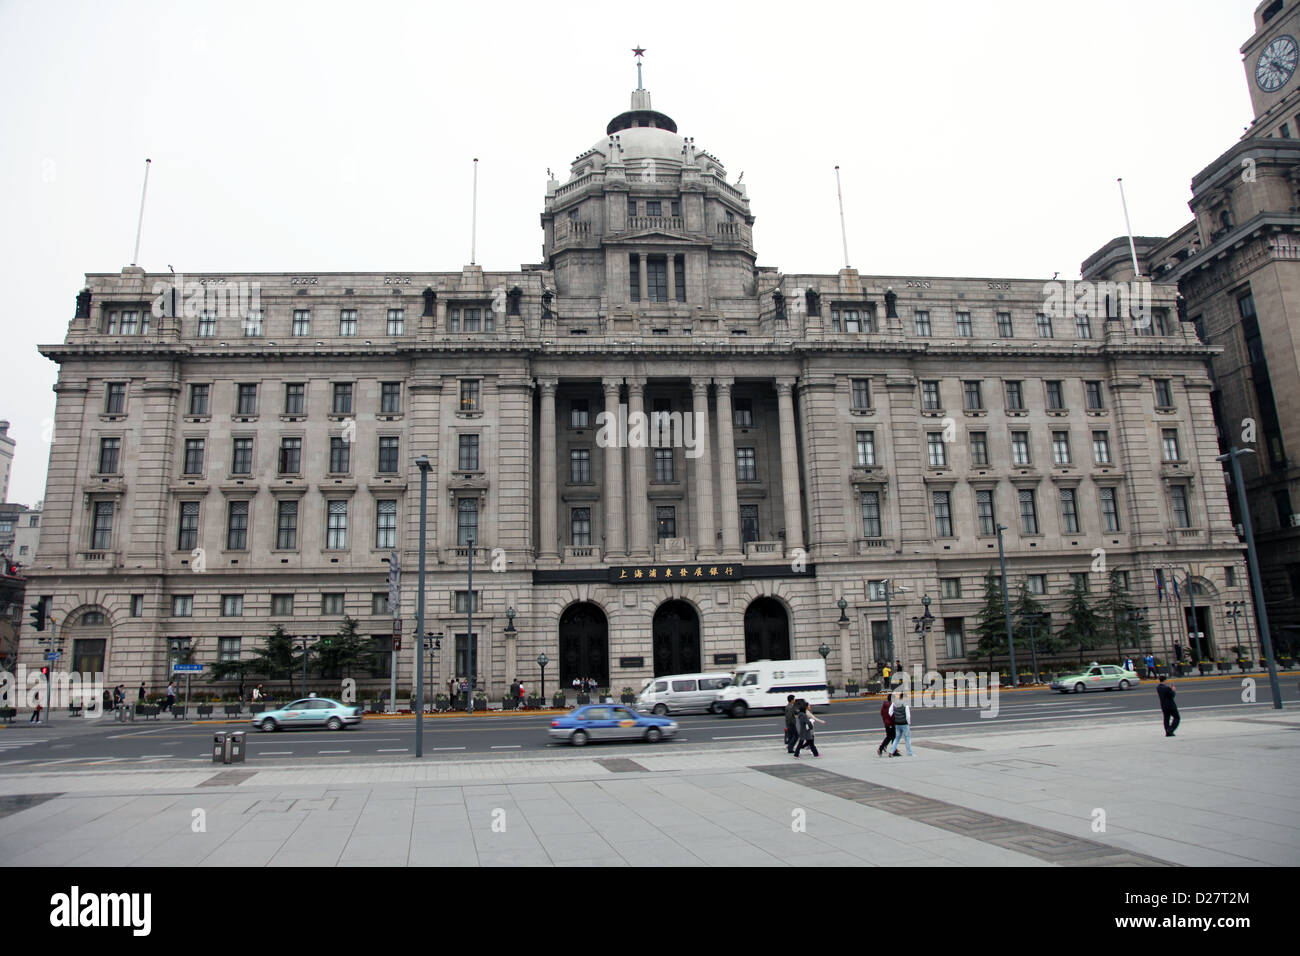 C'est une photo du célèbre front de mer de Shanghai avec tous ses vieux bâtiments de style colonial de banques et sociétés financières Banque D'Images